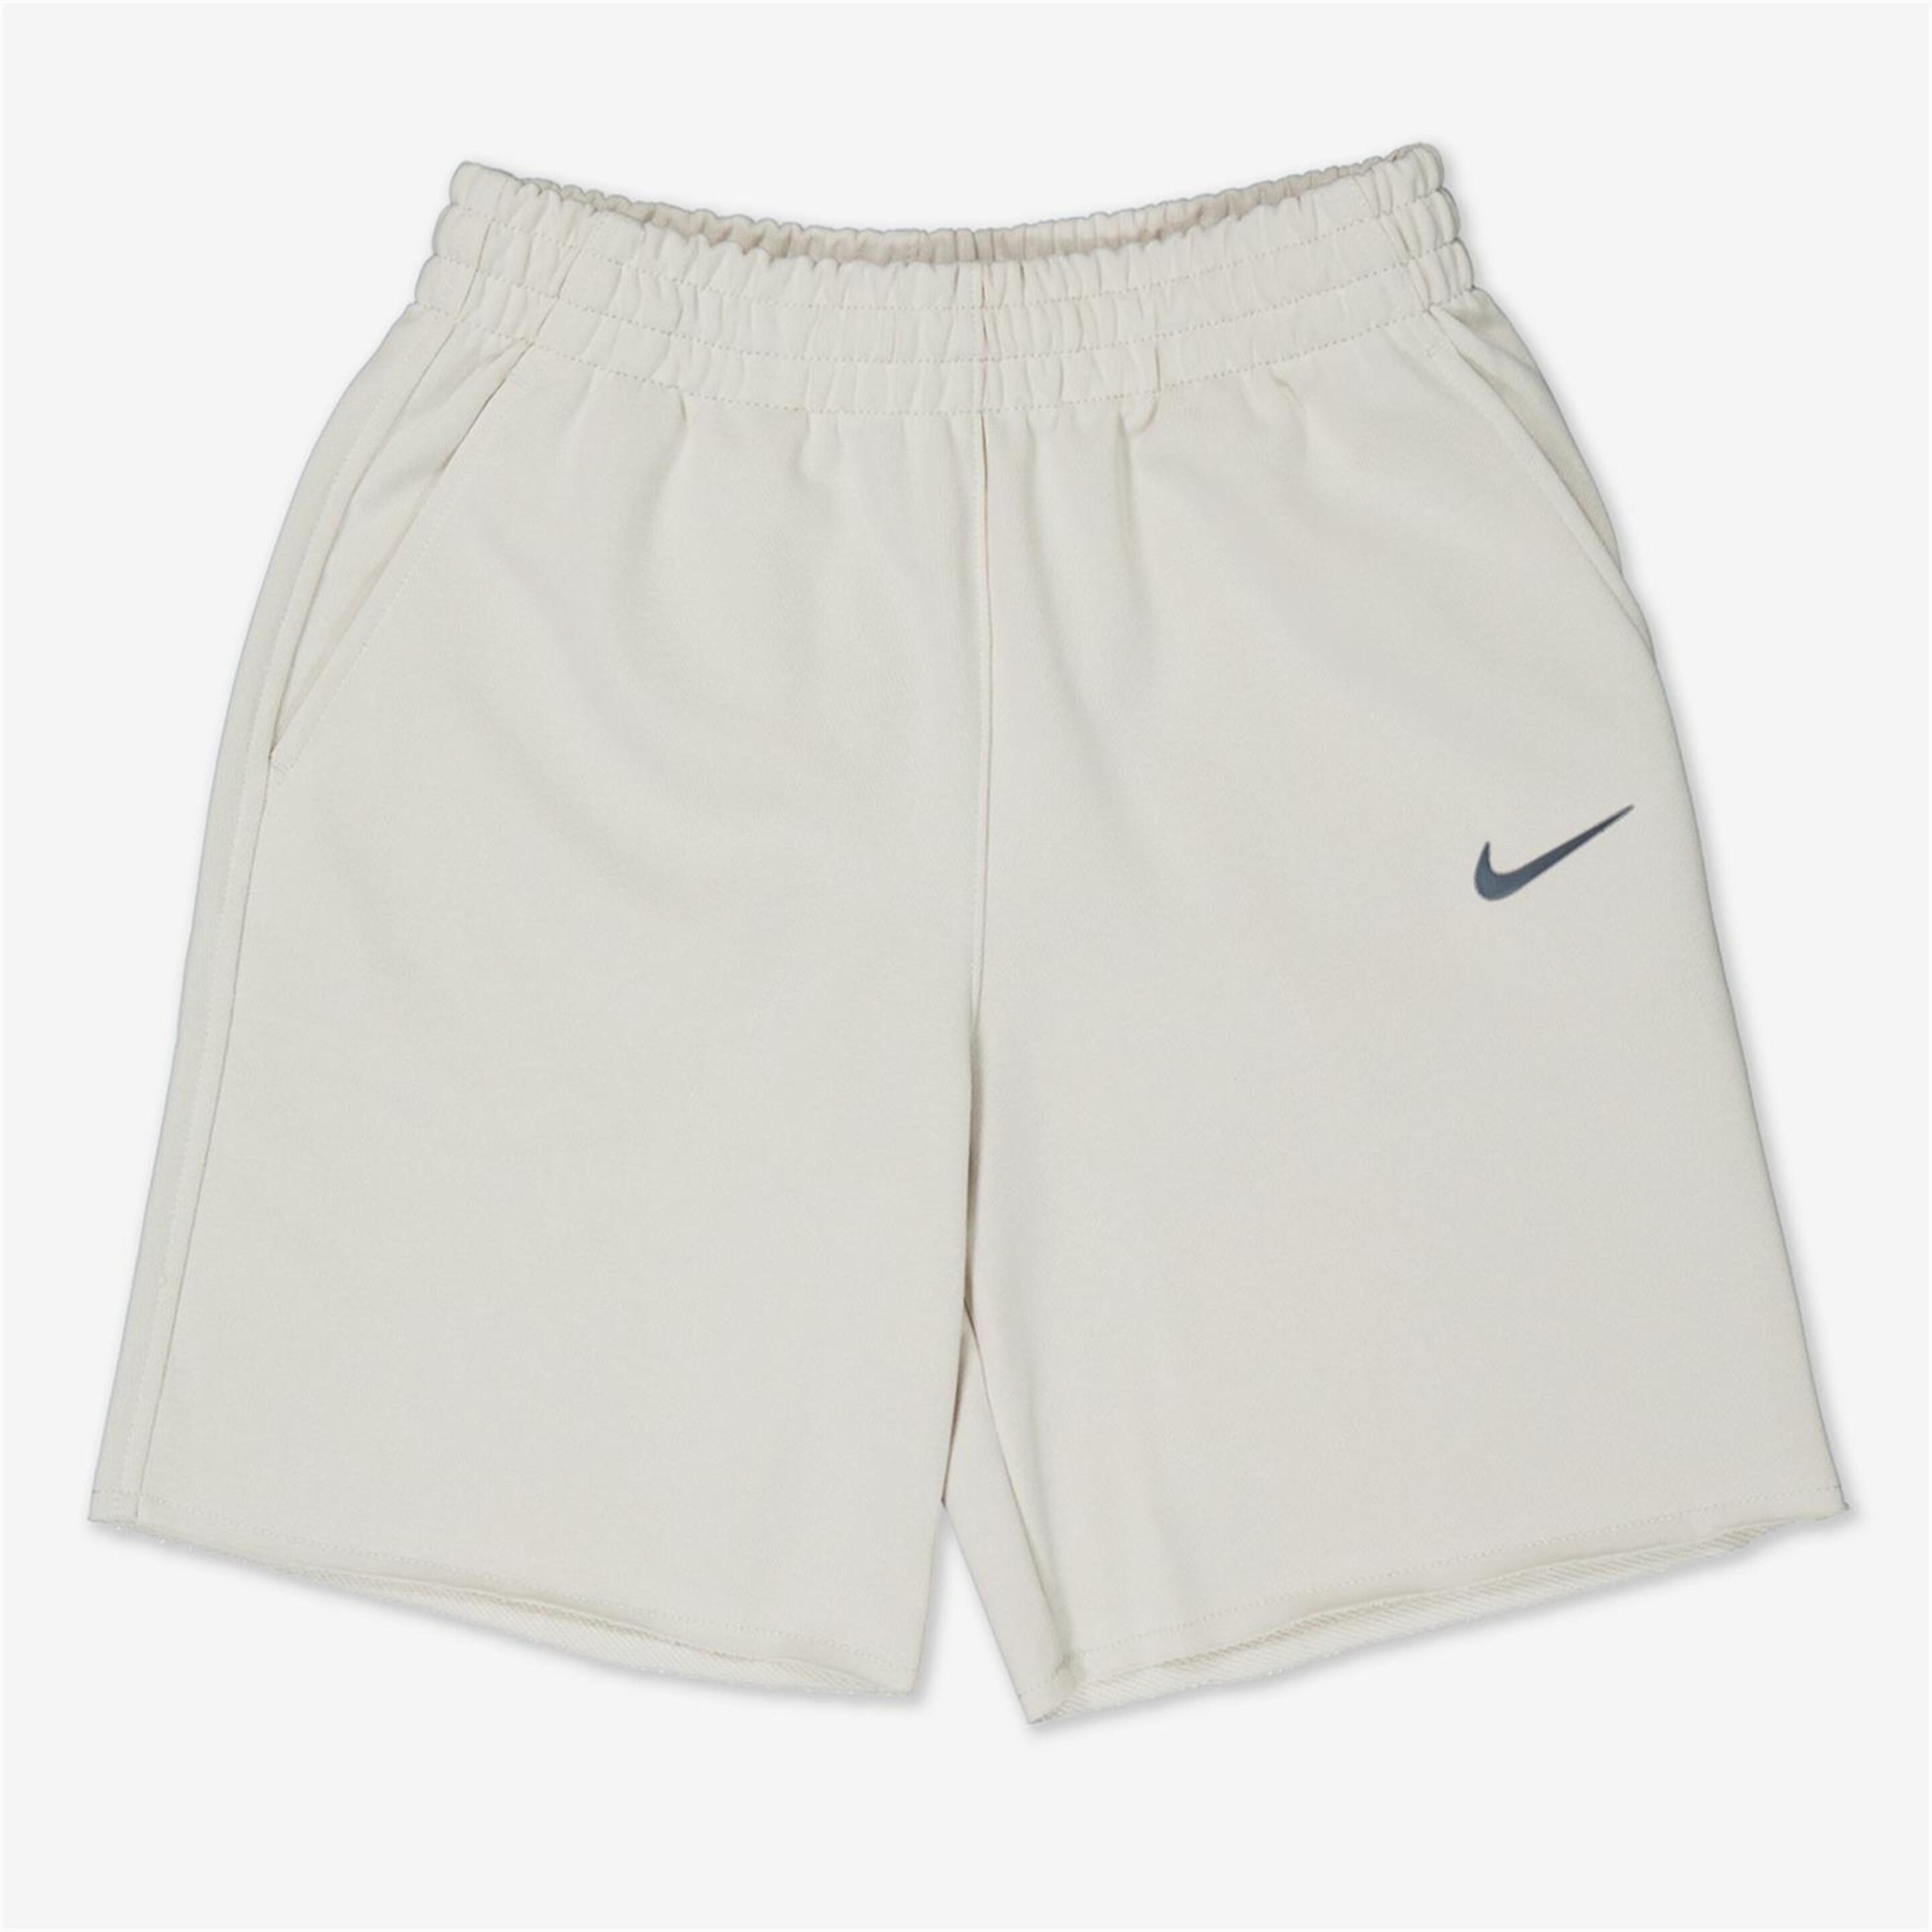 Pantalón Corto Nike - marron - Bermuda Niña